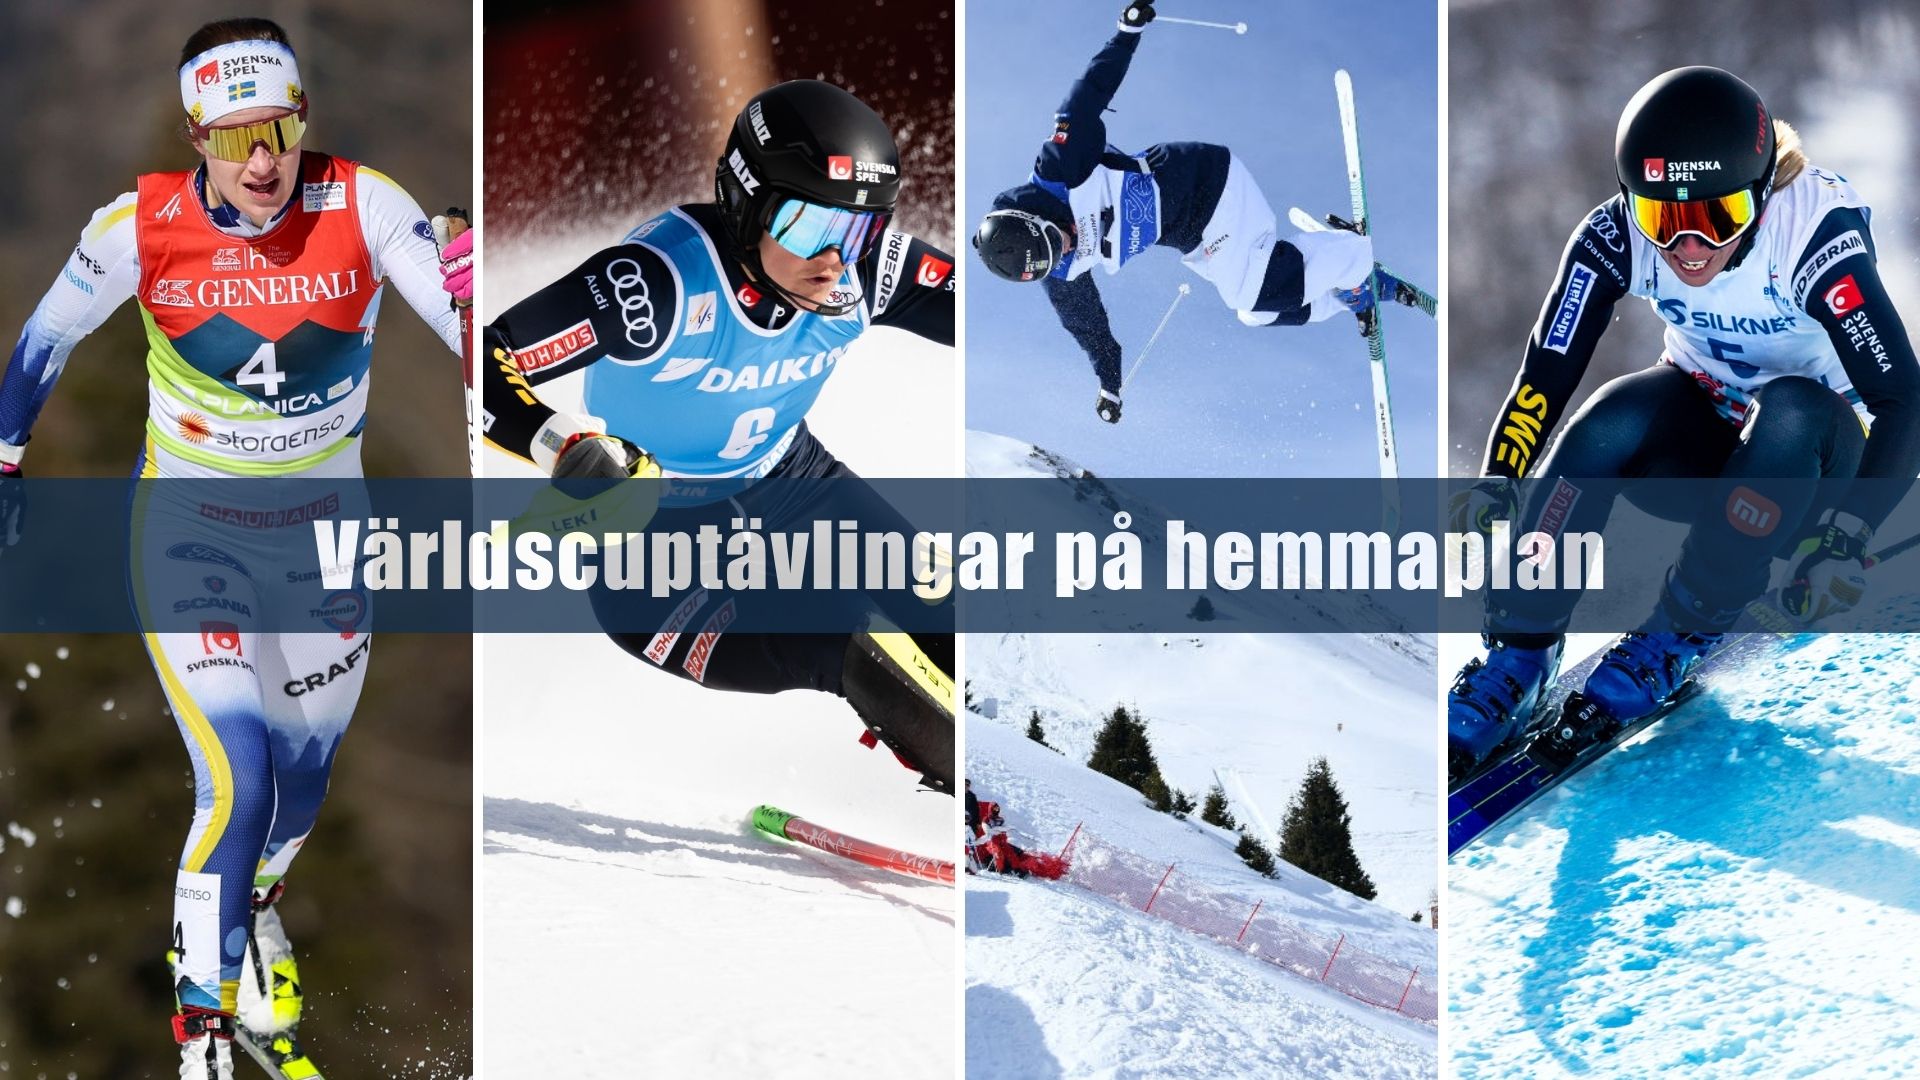 Kollage med längdåkning, alpint, puckel och skicross med texten "Världscuptävlingar på hemmaplan"